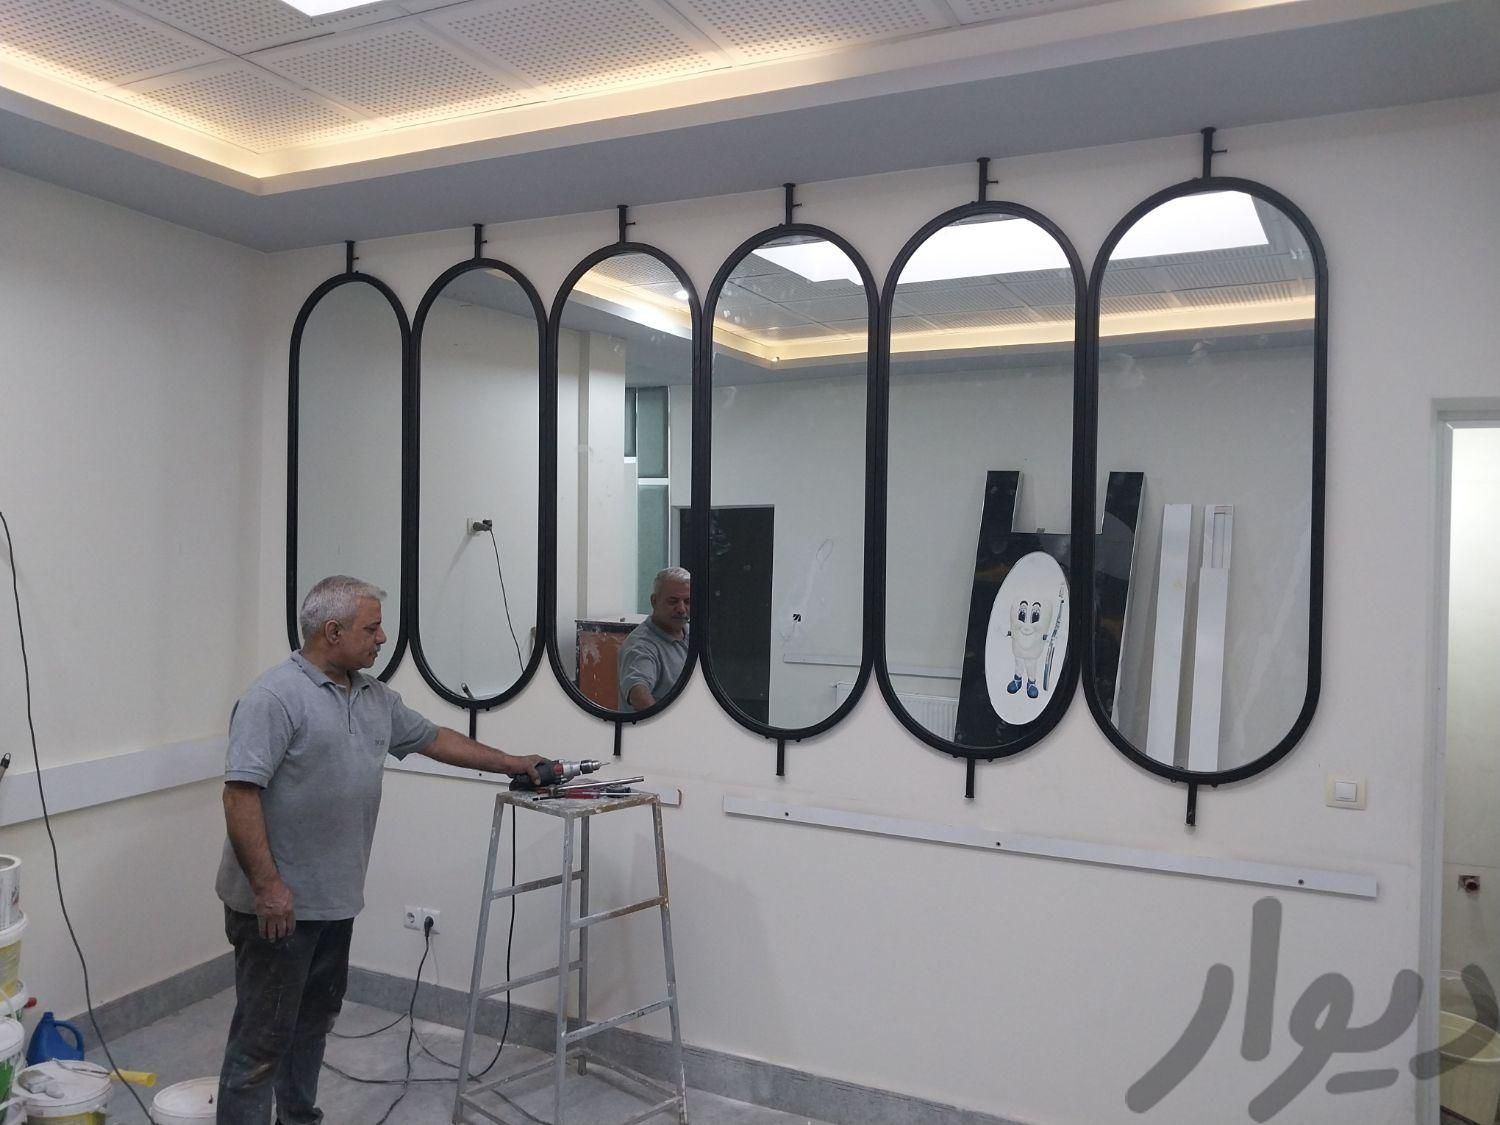 آینه قدی دیواری (دوام فلز)|آینه|مشهد, گلشور|دیوار